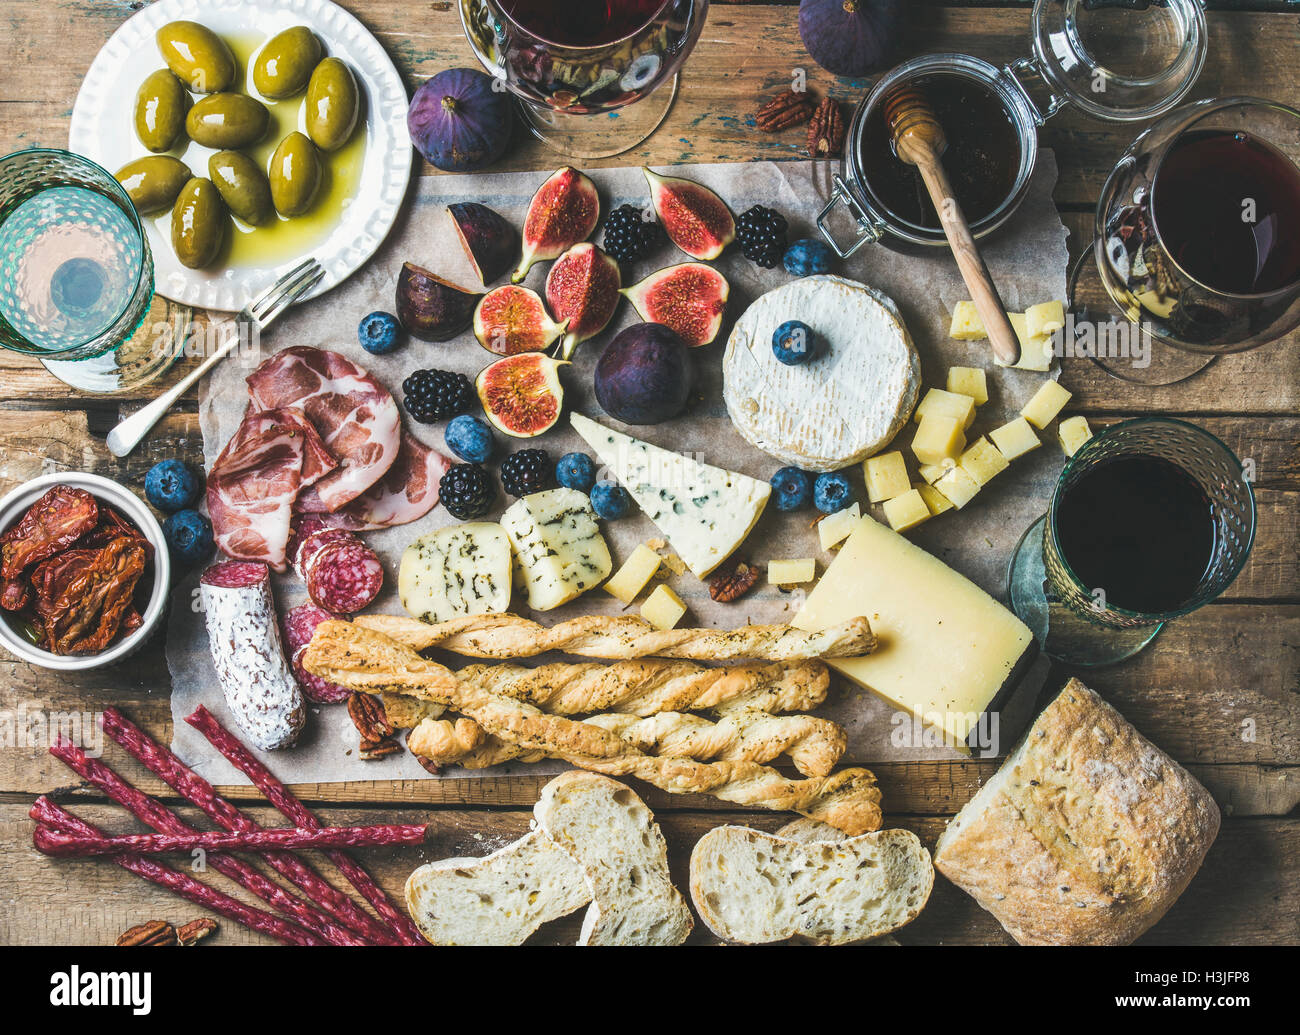 Vino e snack impostato con i vari vini in bicchieri, varietà di carne, ciabatta, pomodori secchi, miele, le olive verdi, fichi, noci un Foto Stock